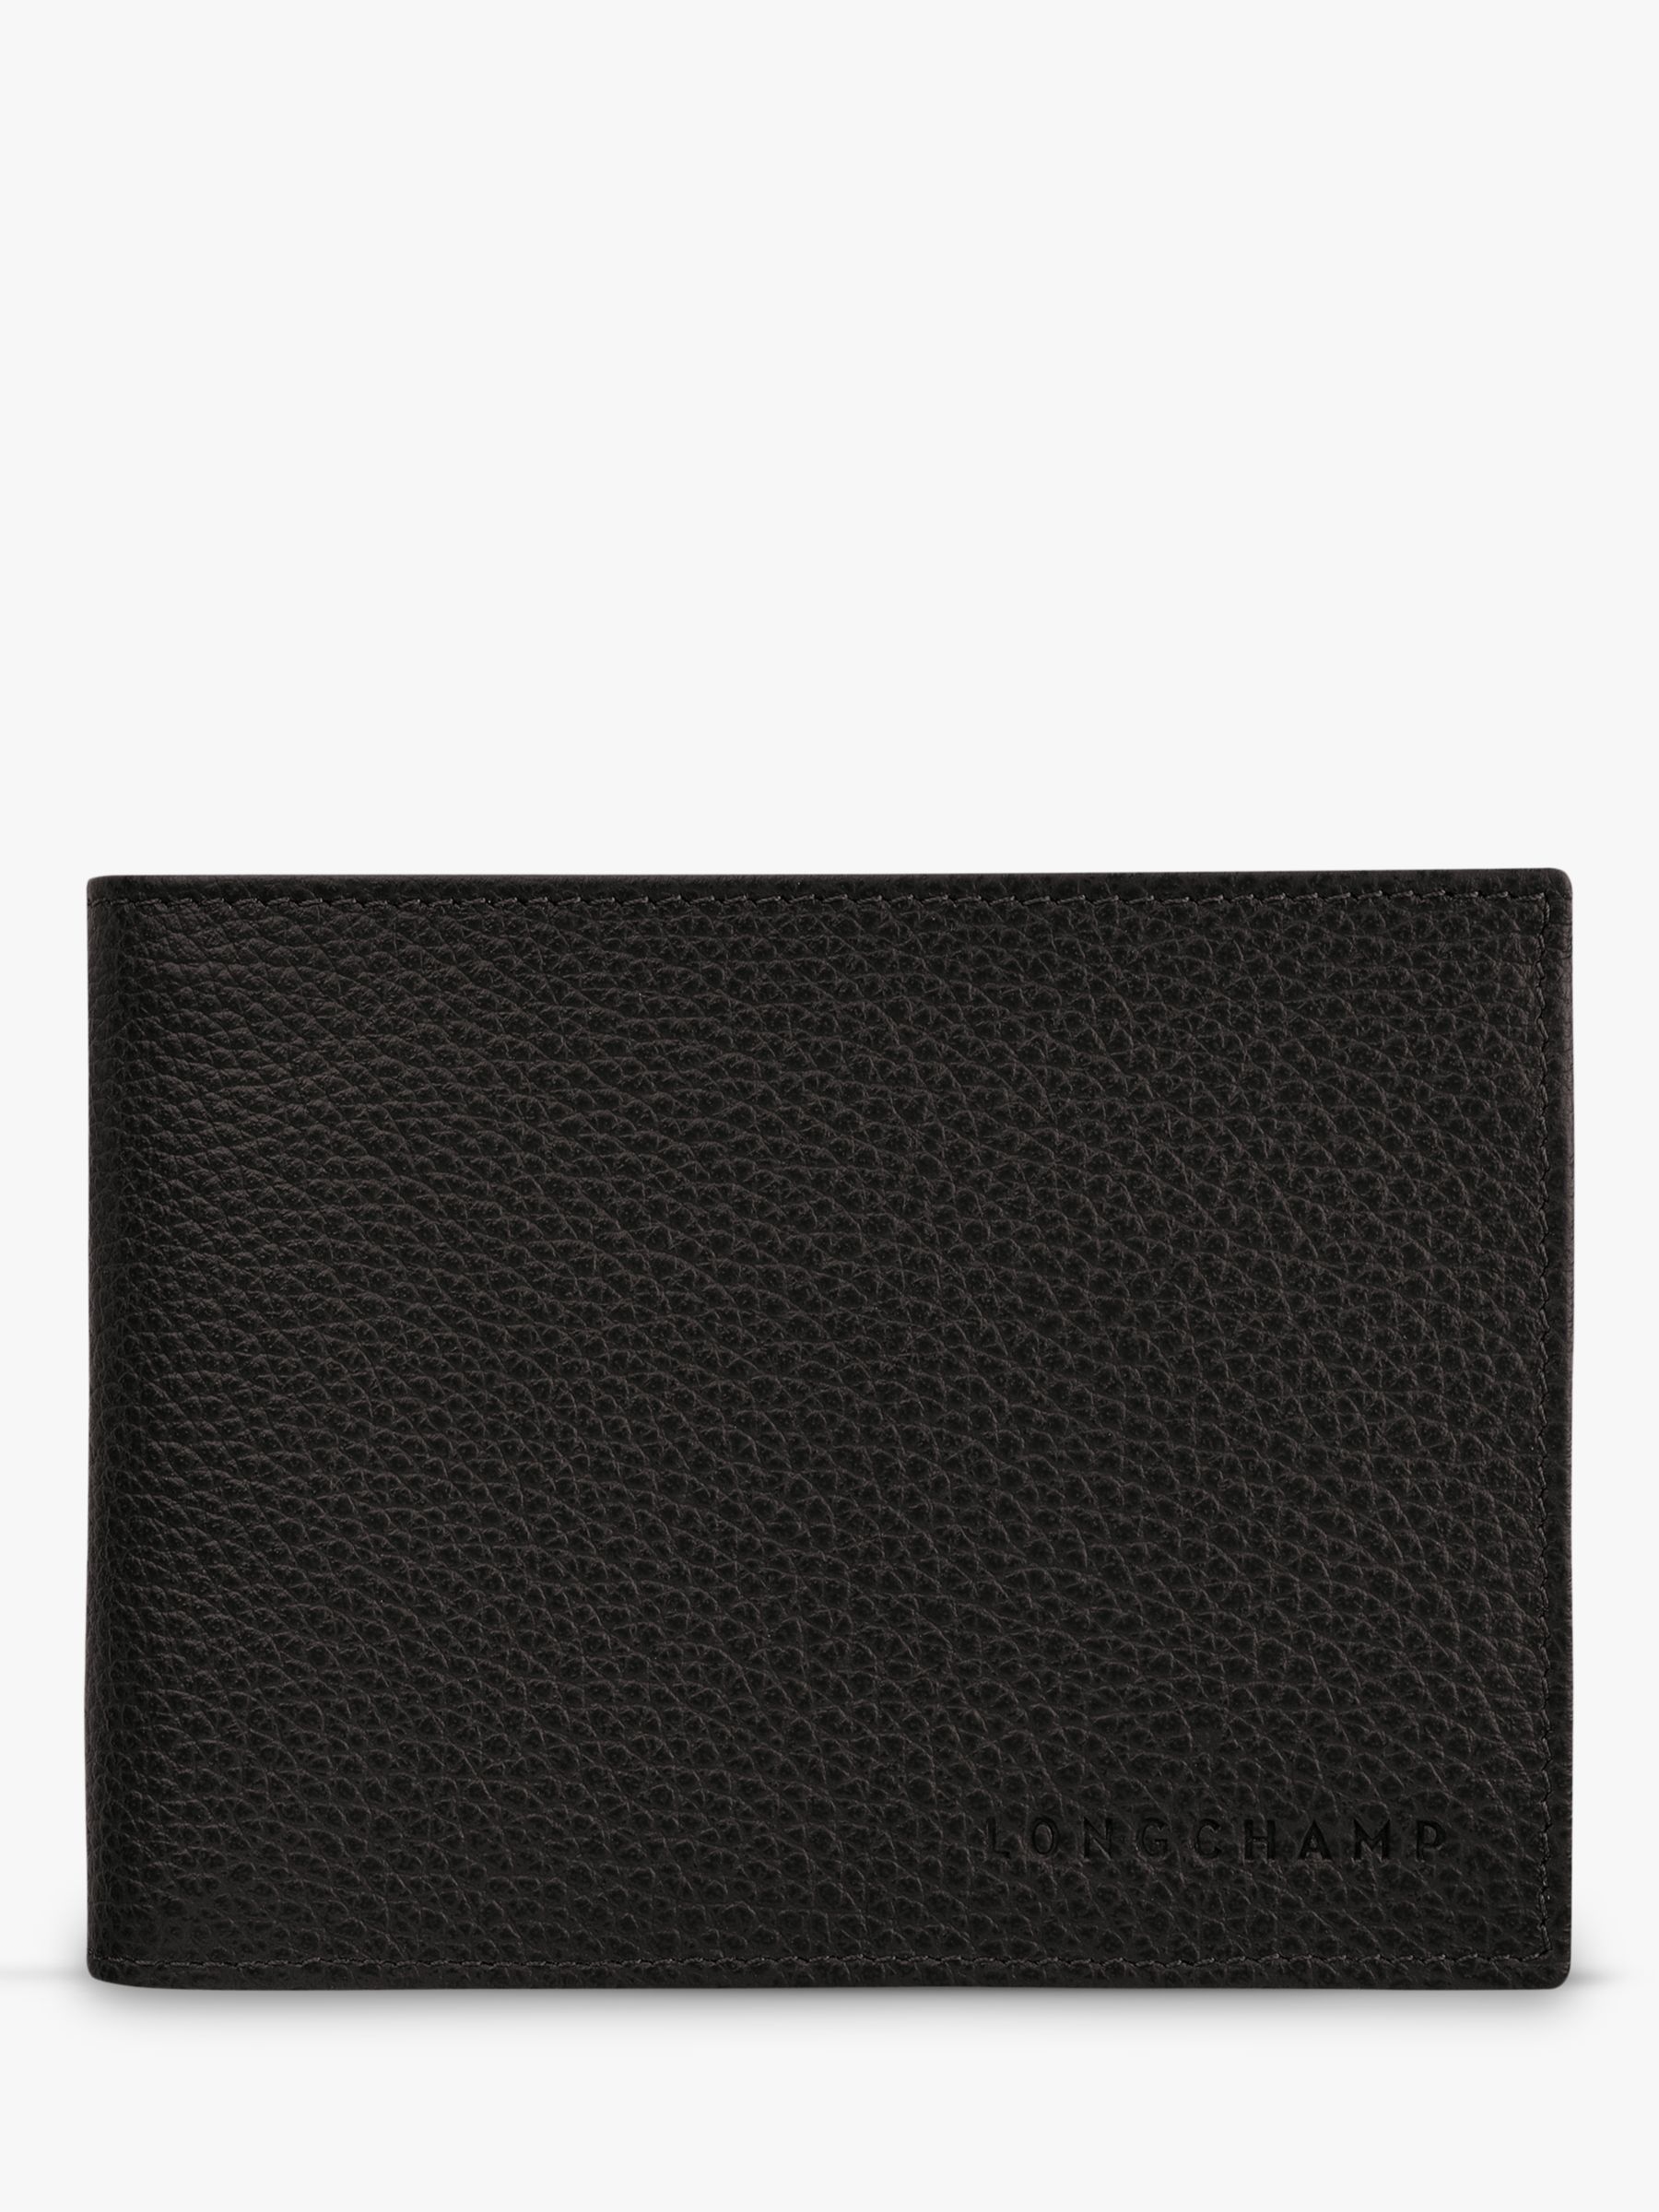 Longchamp Le Foulonné Leather Card & Coin Wallet, Black